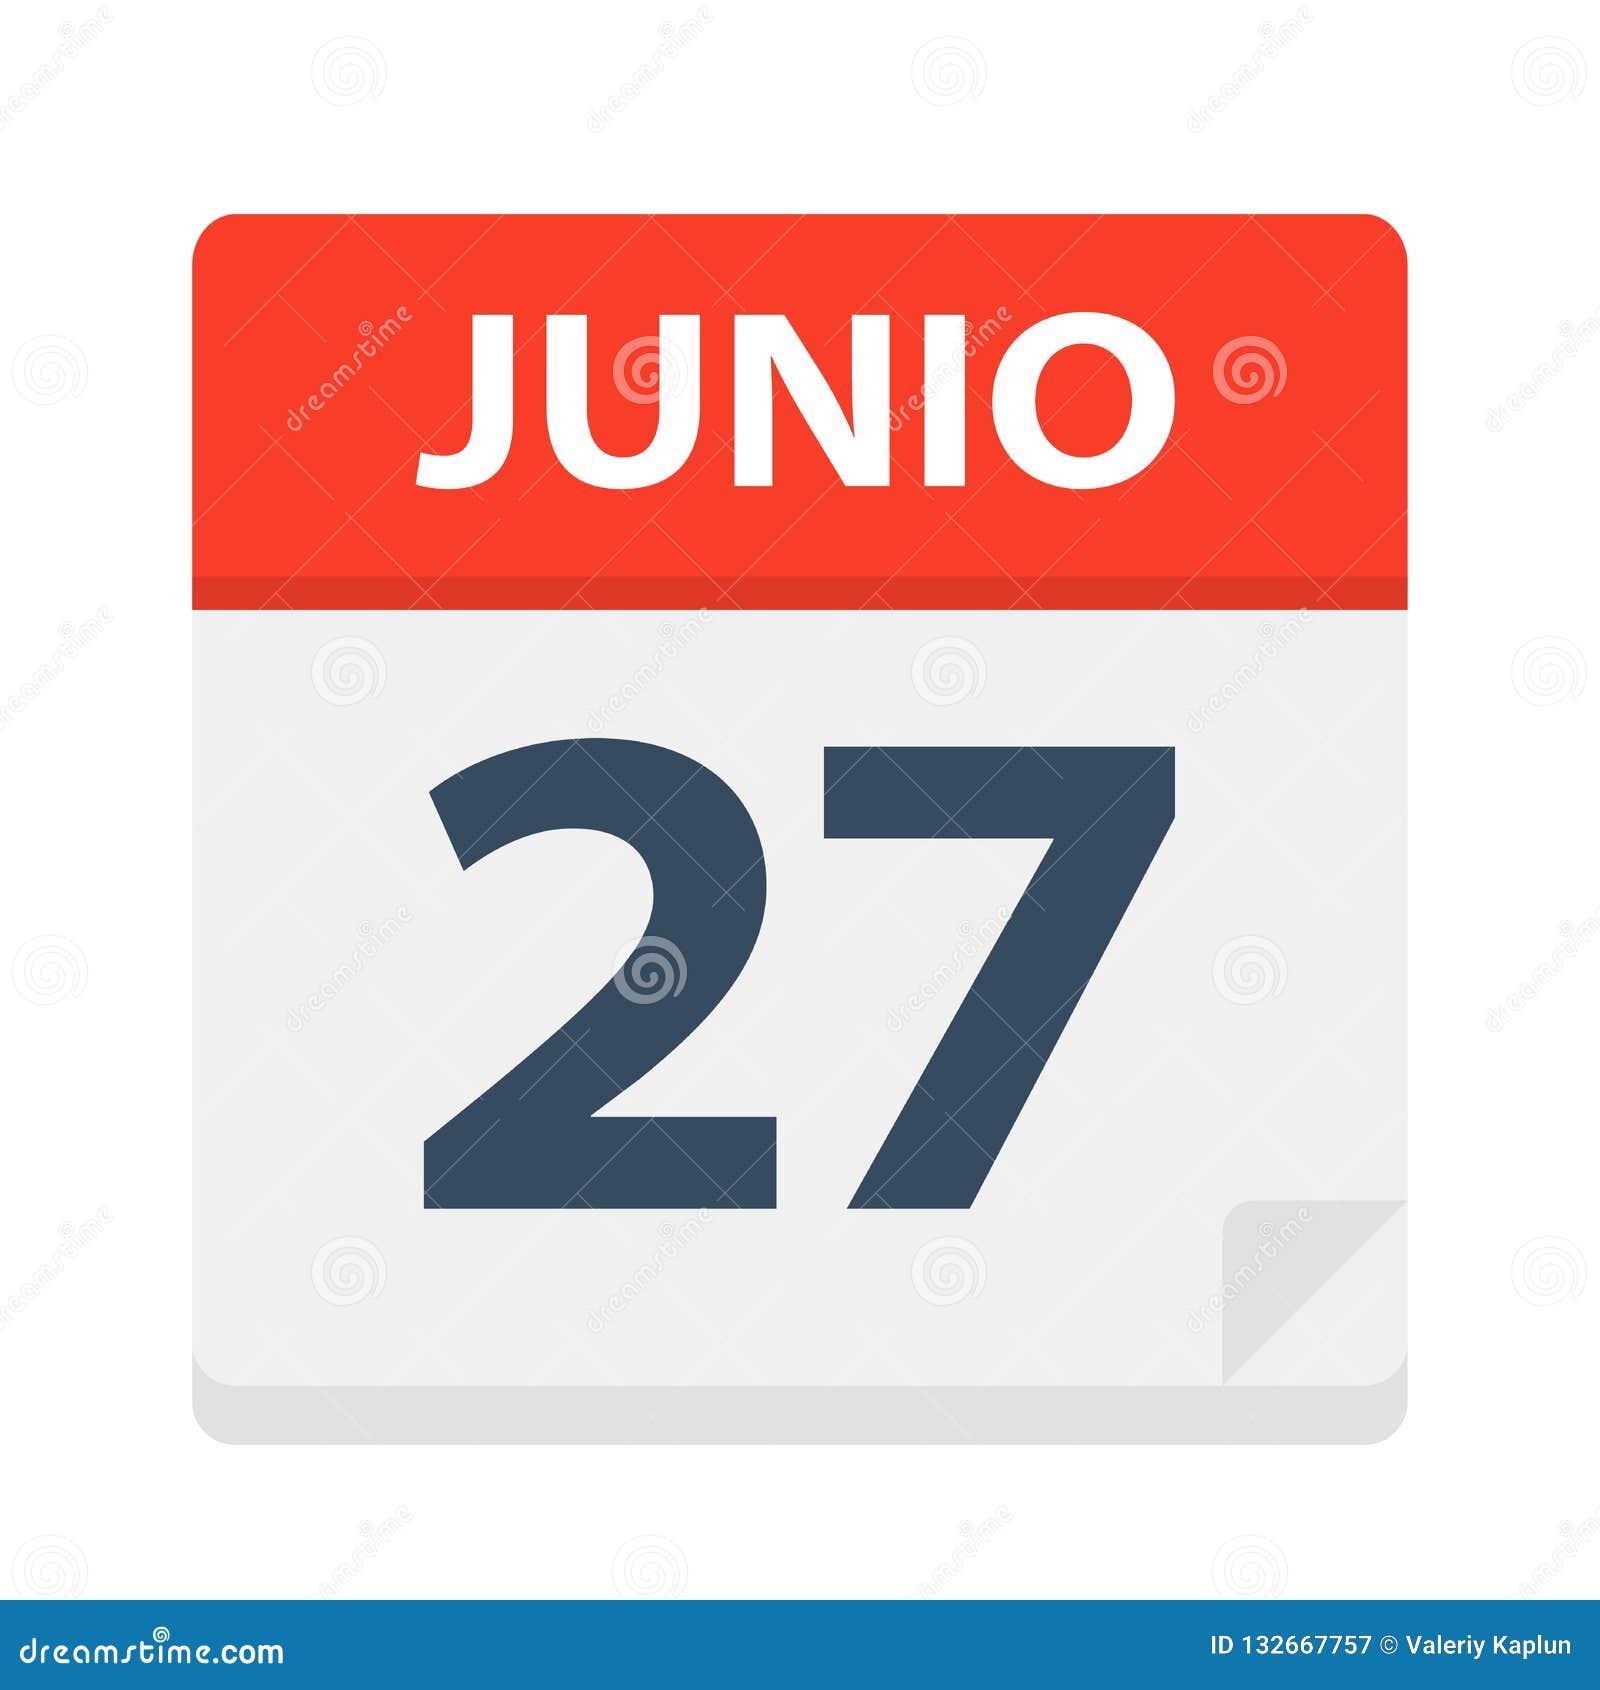 junio 27 - calendar icon - june 27.   of spanish calendar leaf